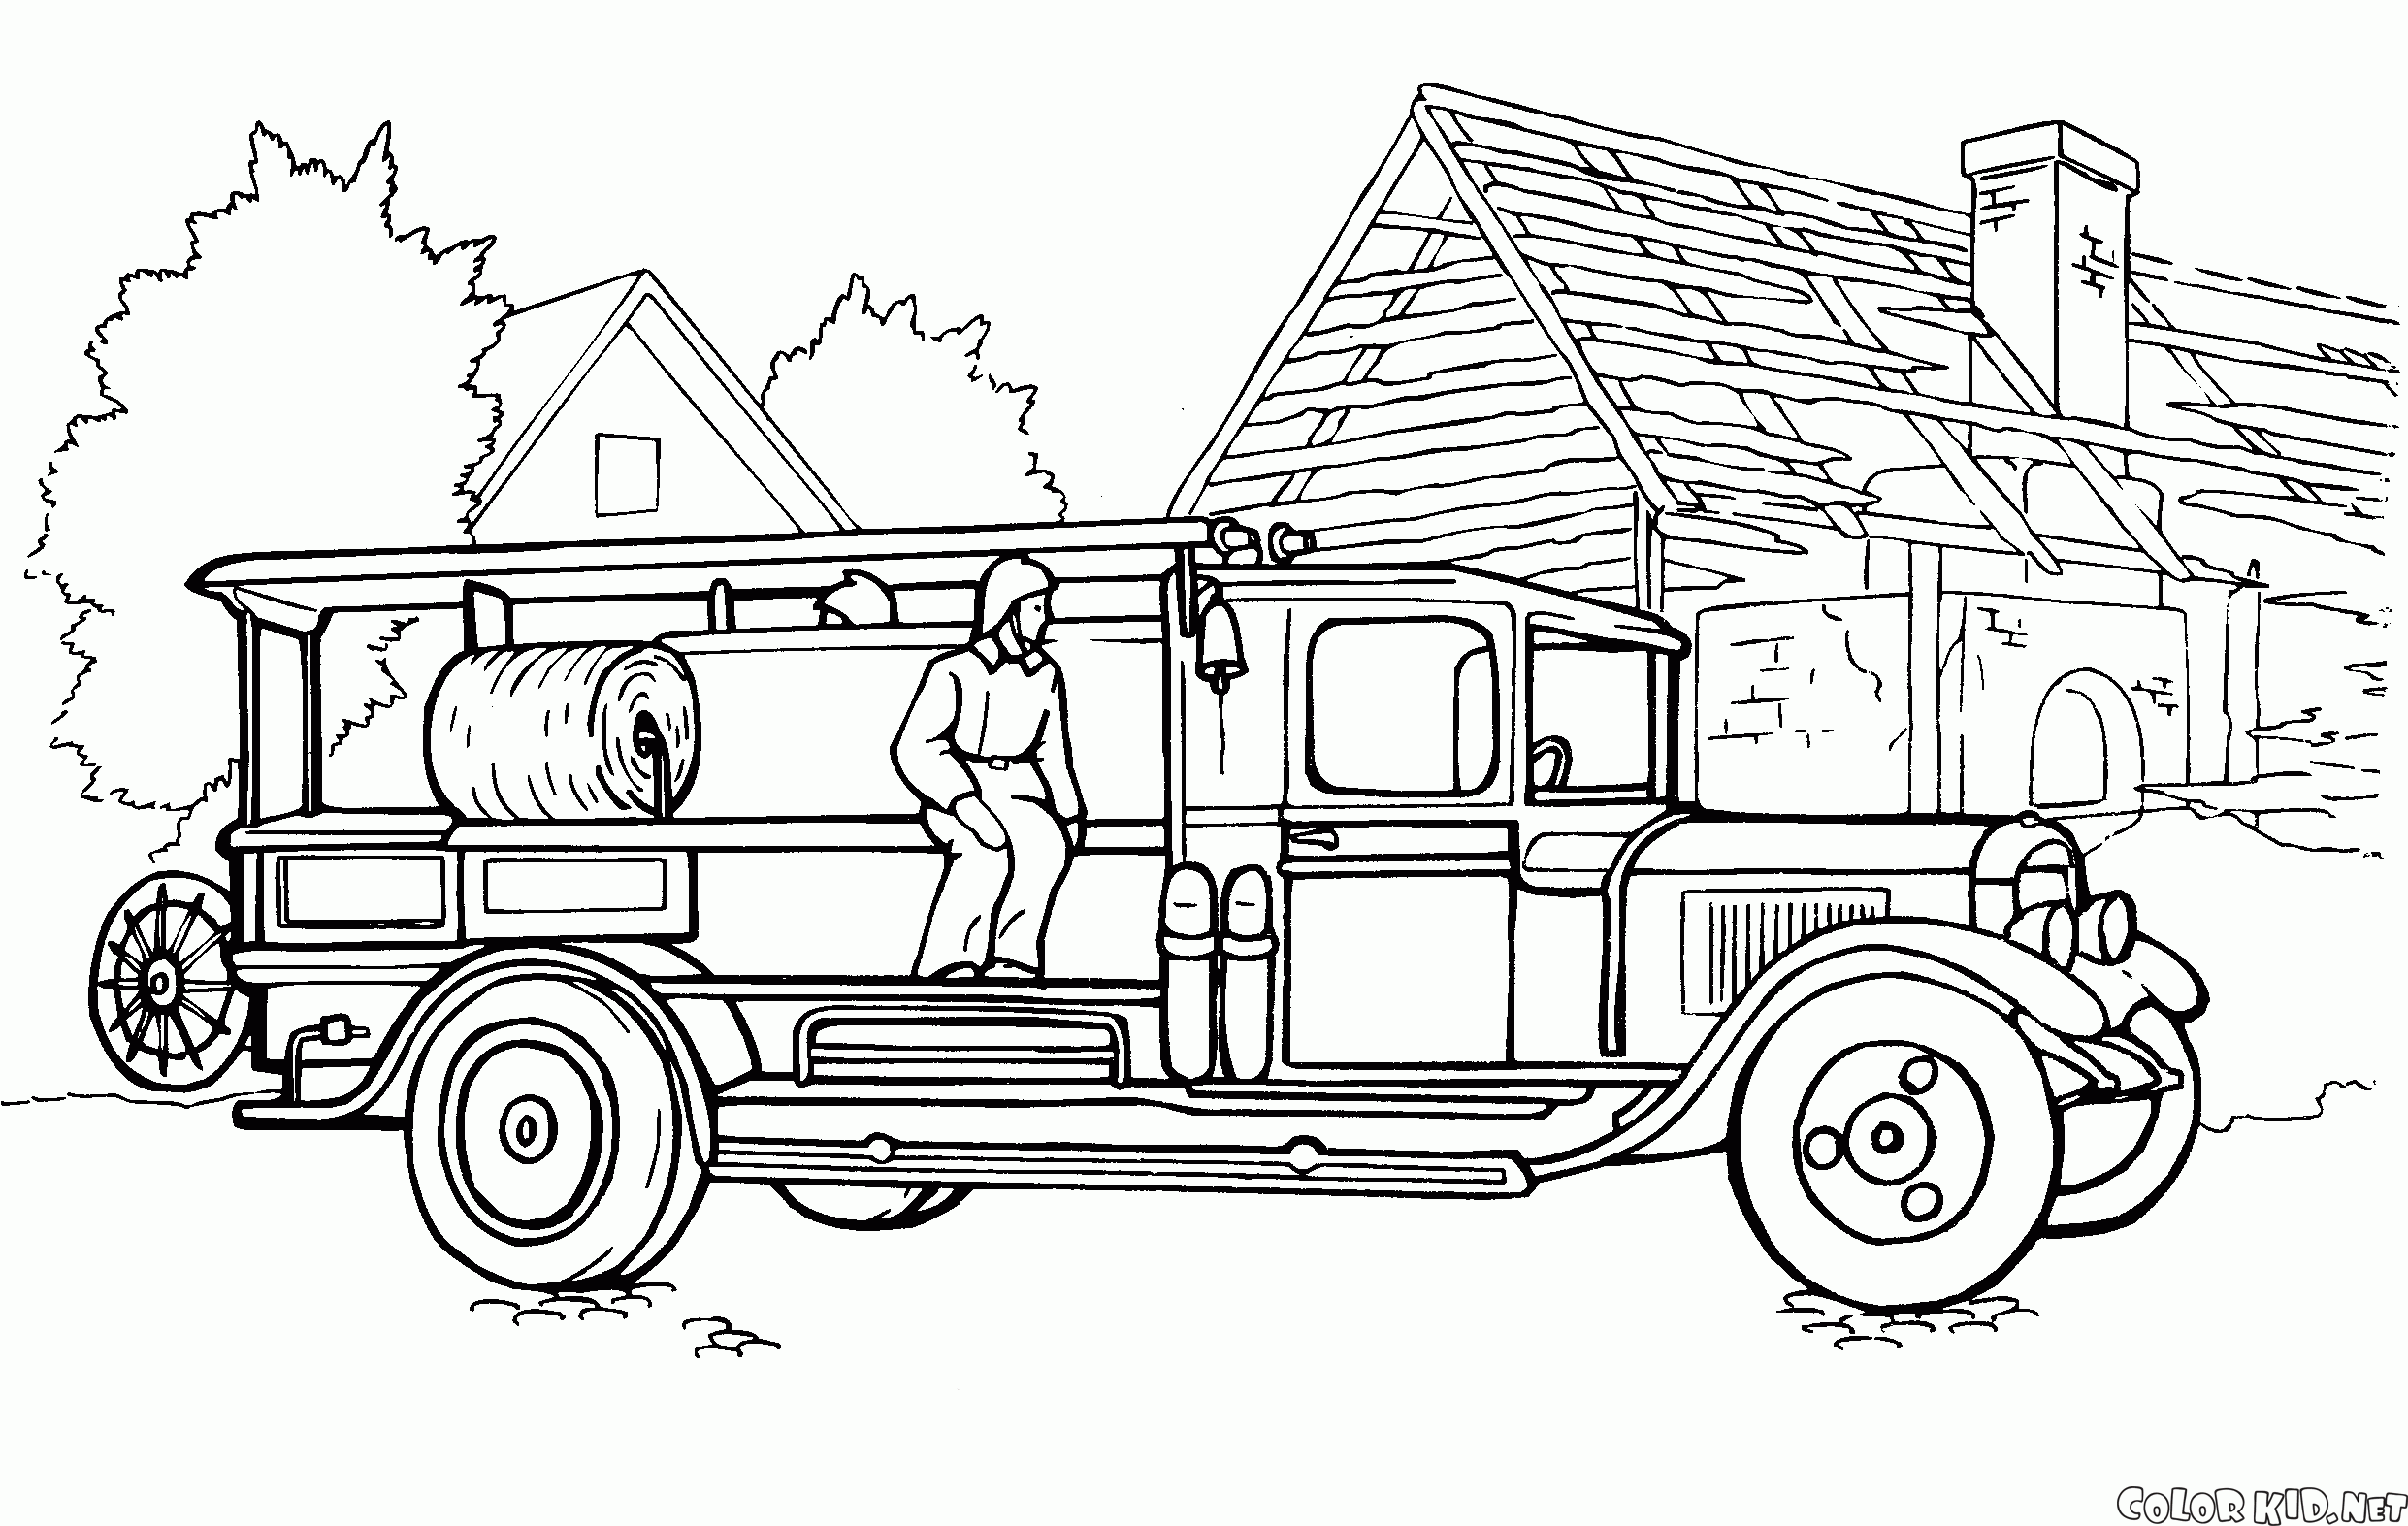 消防車19が、世紀